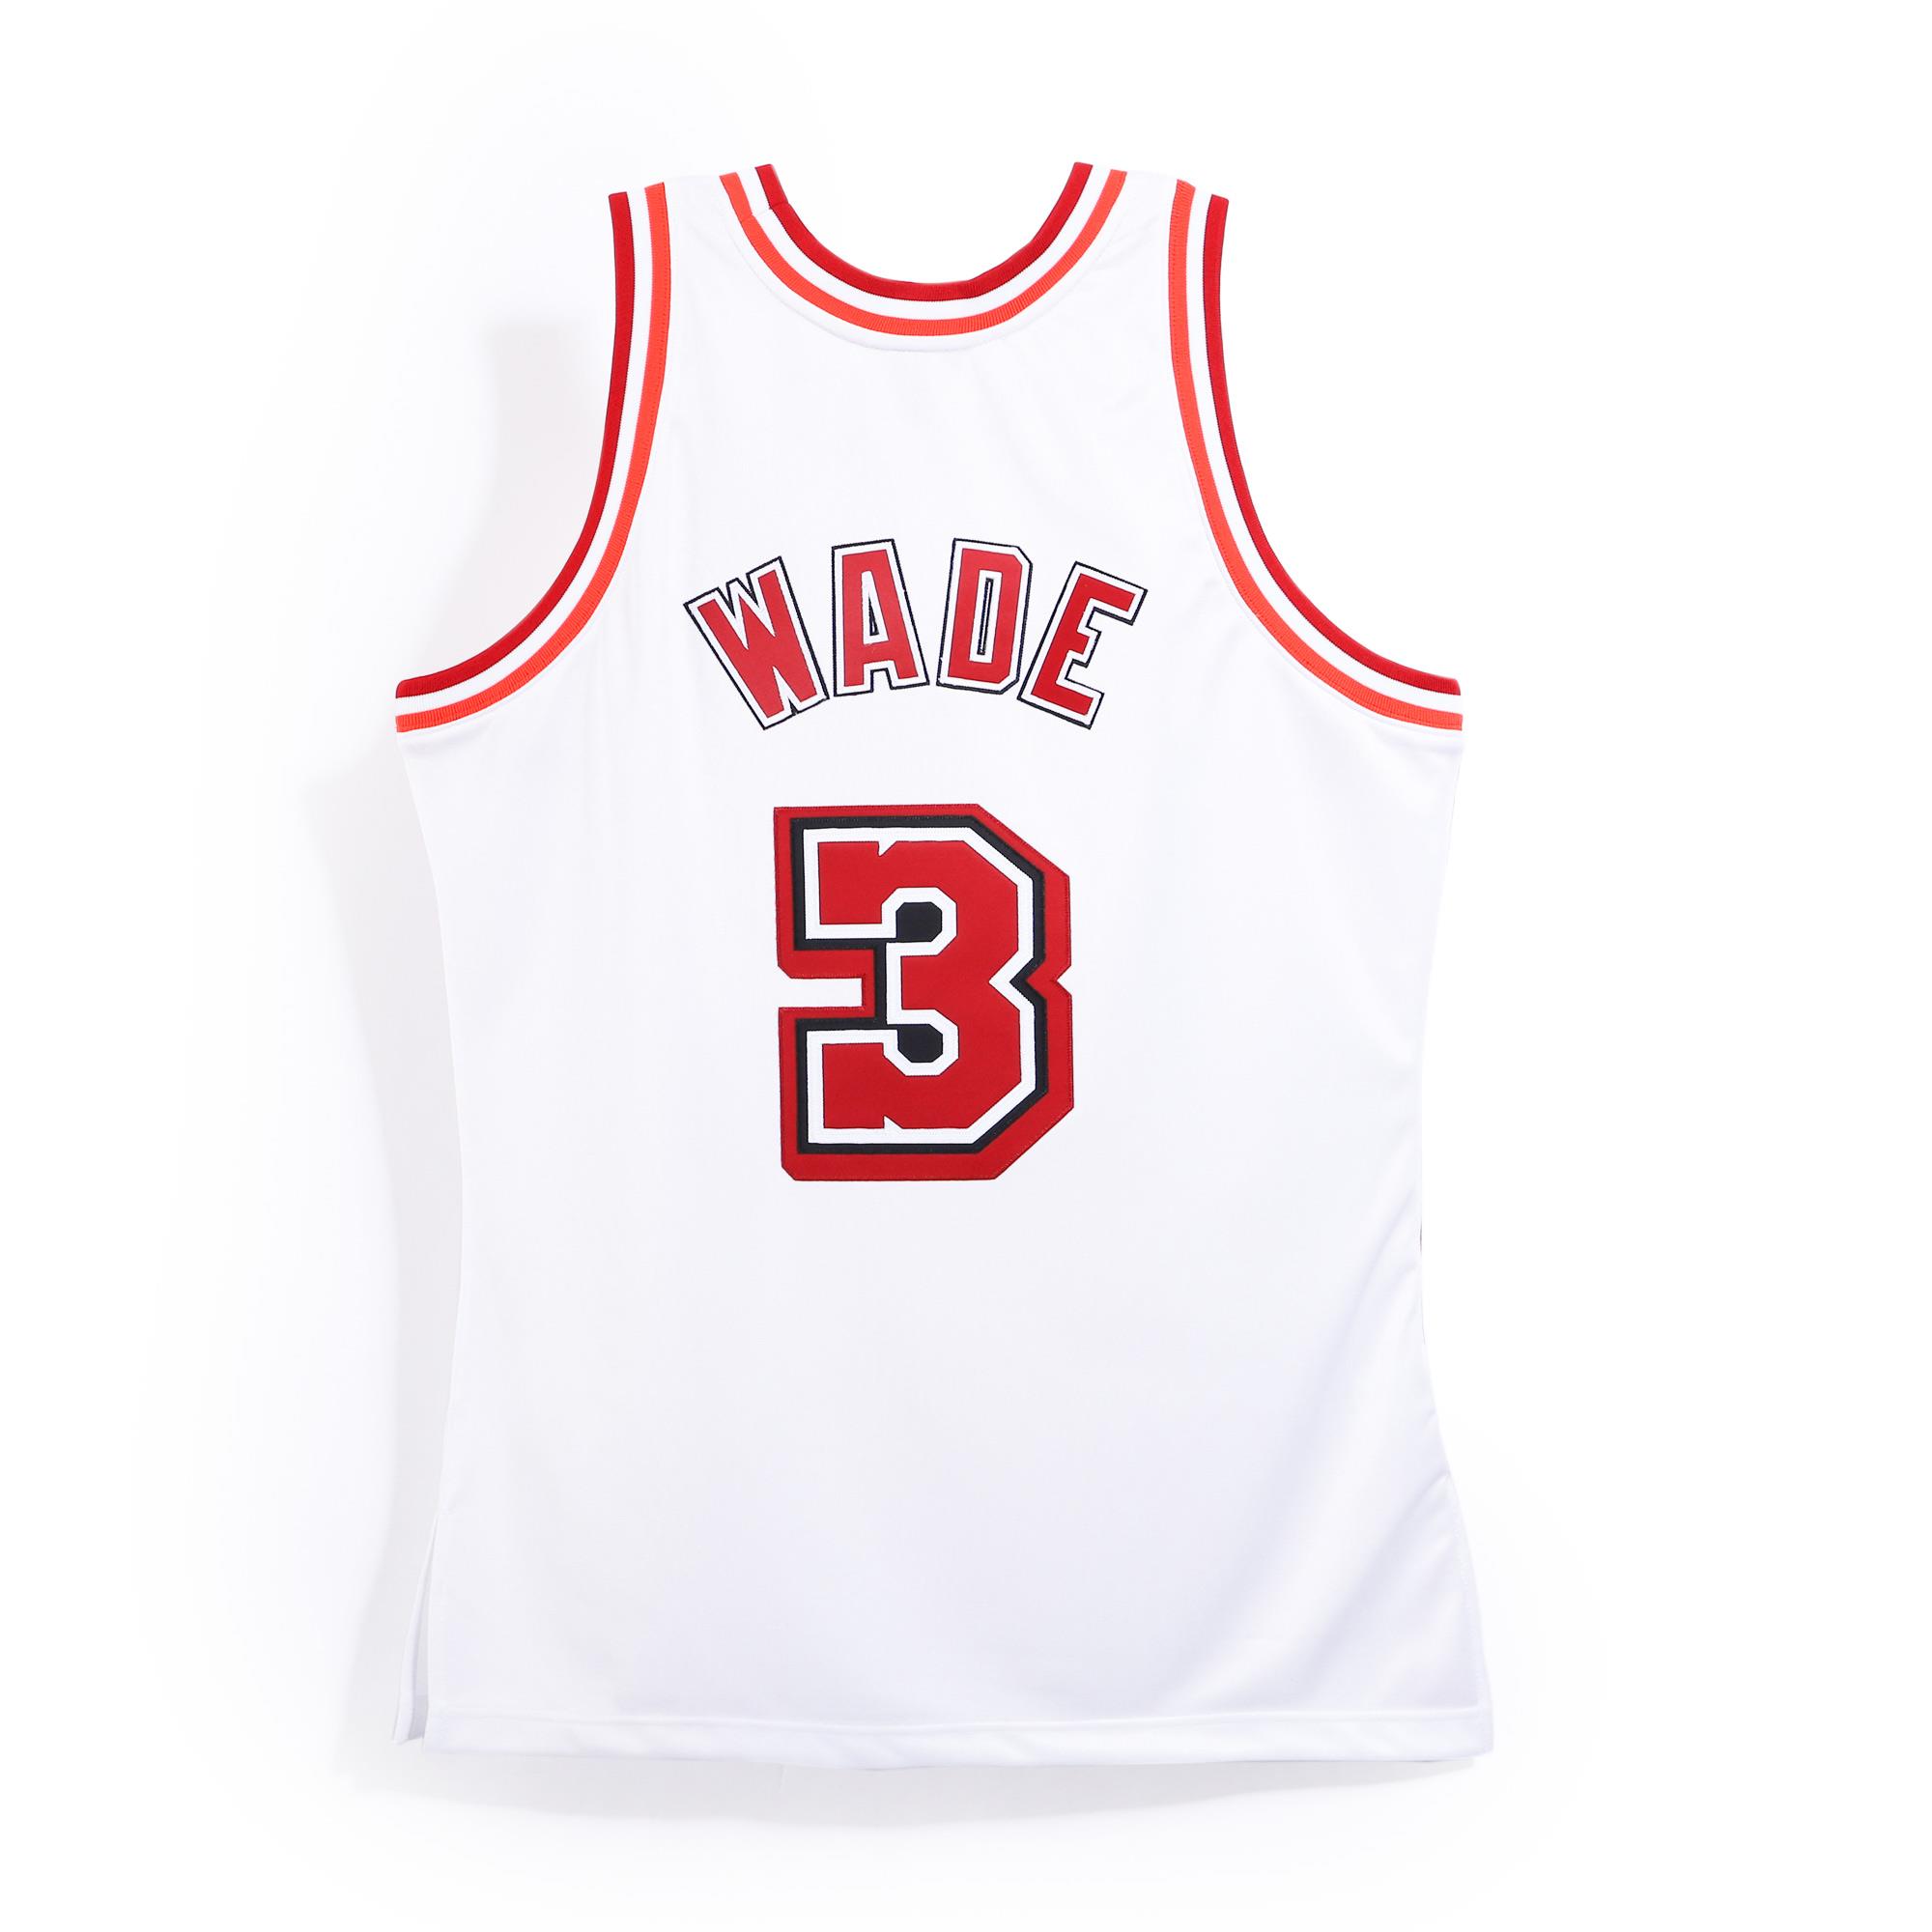 Maillot NBA Dwyane Wade Miami Heat Mitchell & Ness Hall Of Fame